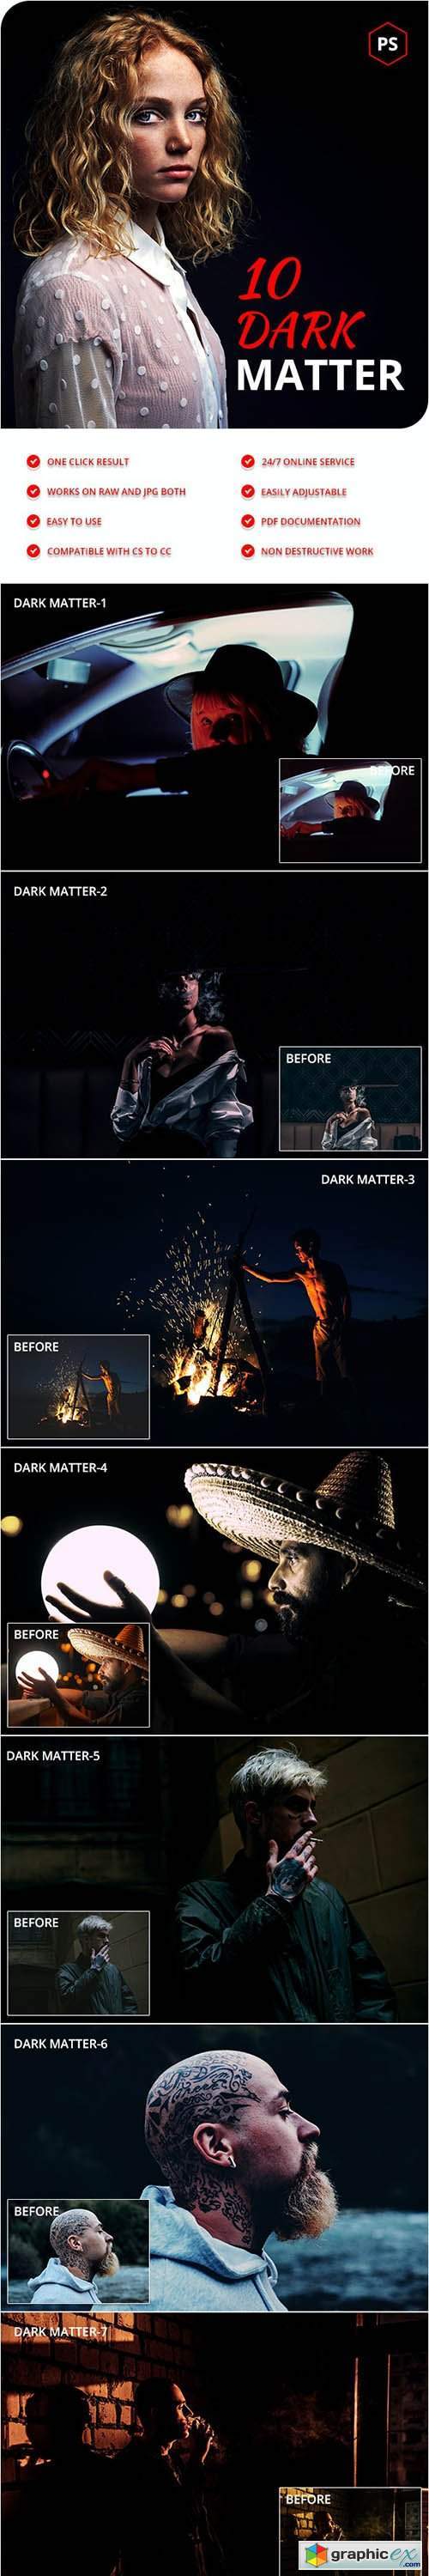 10 Dark Matter Photoshop Actions